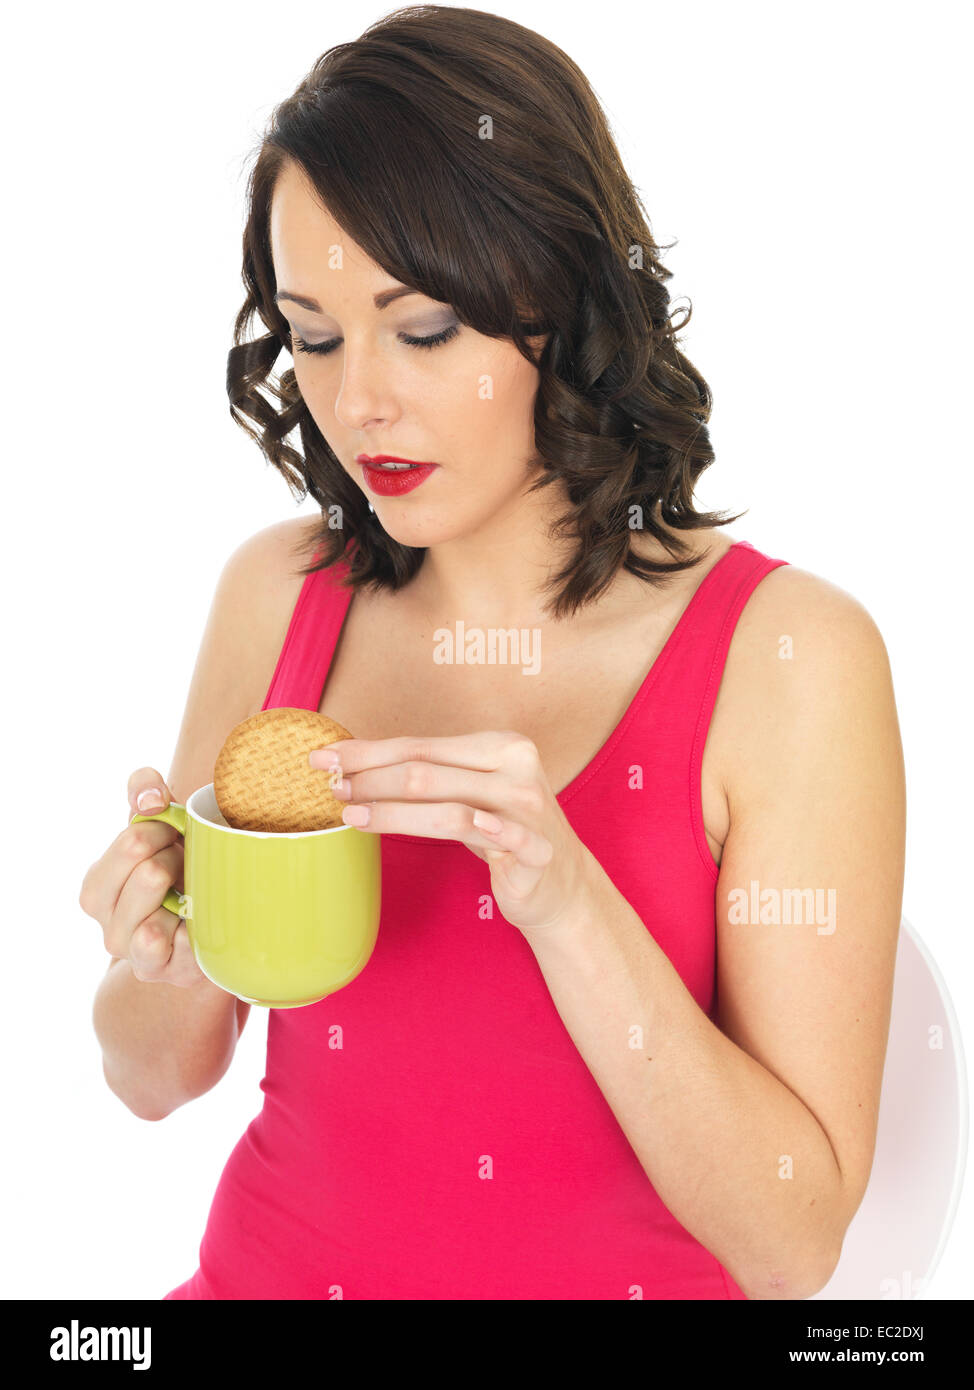 Sicher glückliche junge Frau Tauchen oder Dunking einen Keks in eine Tasse Tee oder Kaffee trinken entspannende Pause Isoliert gegen einen weißen Hintergrund Stockfoto